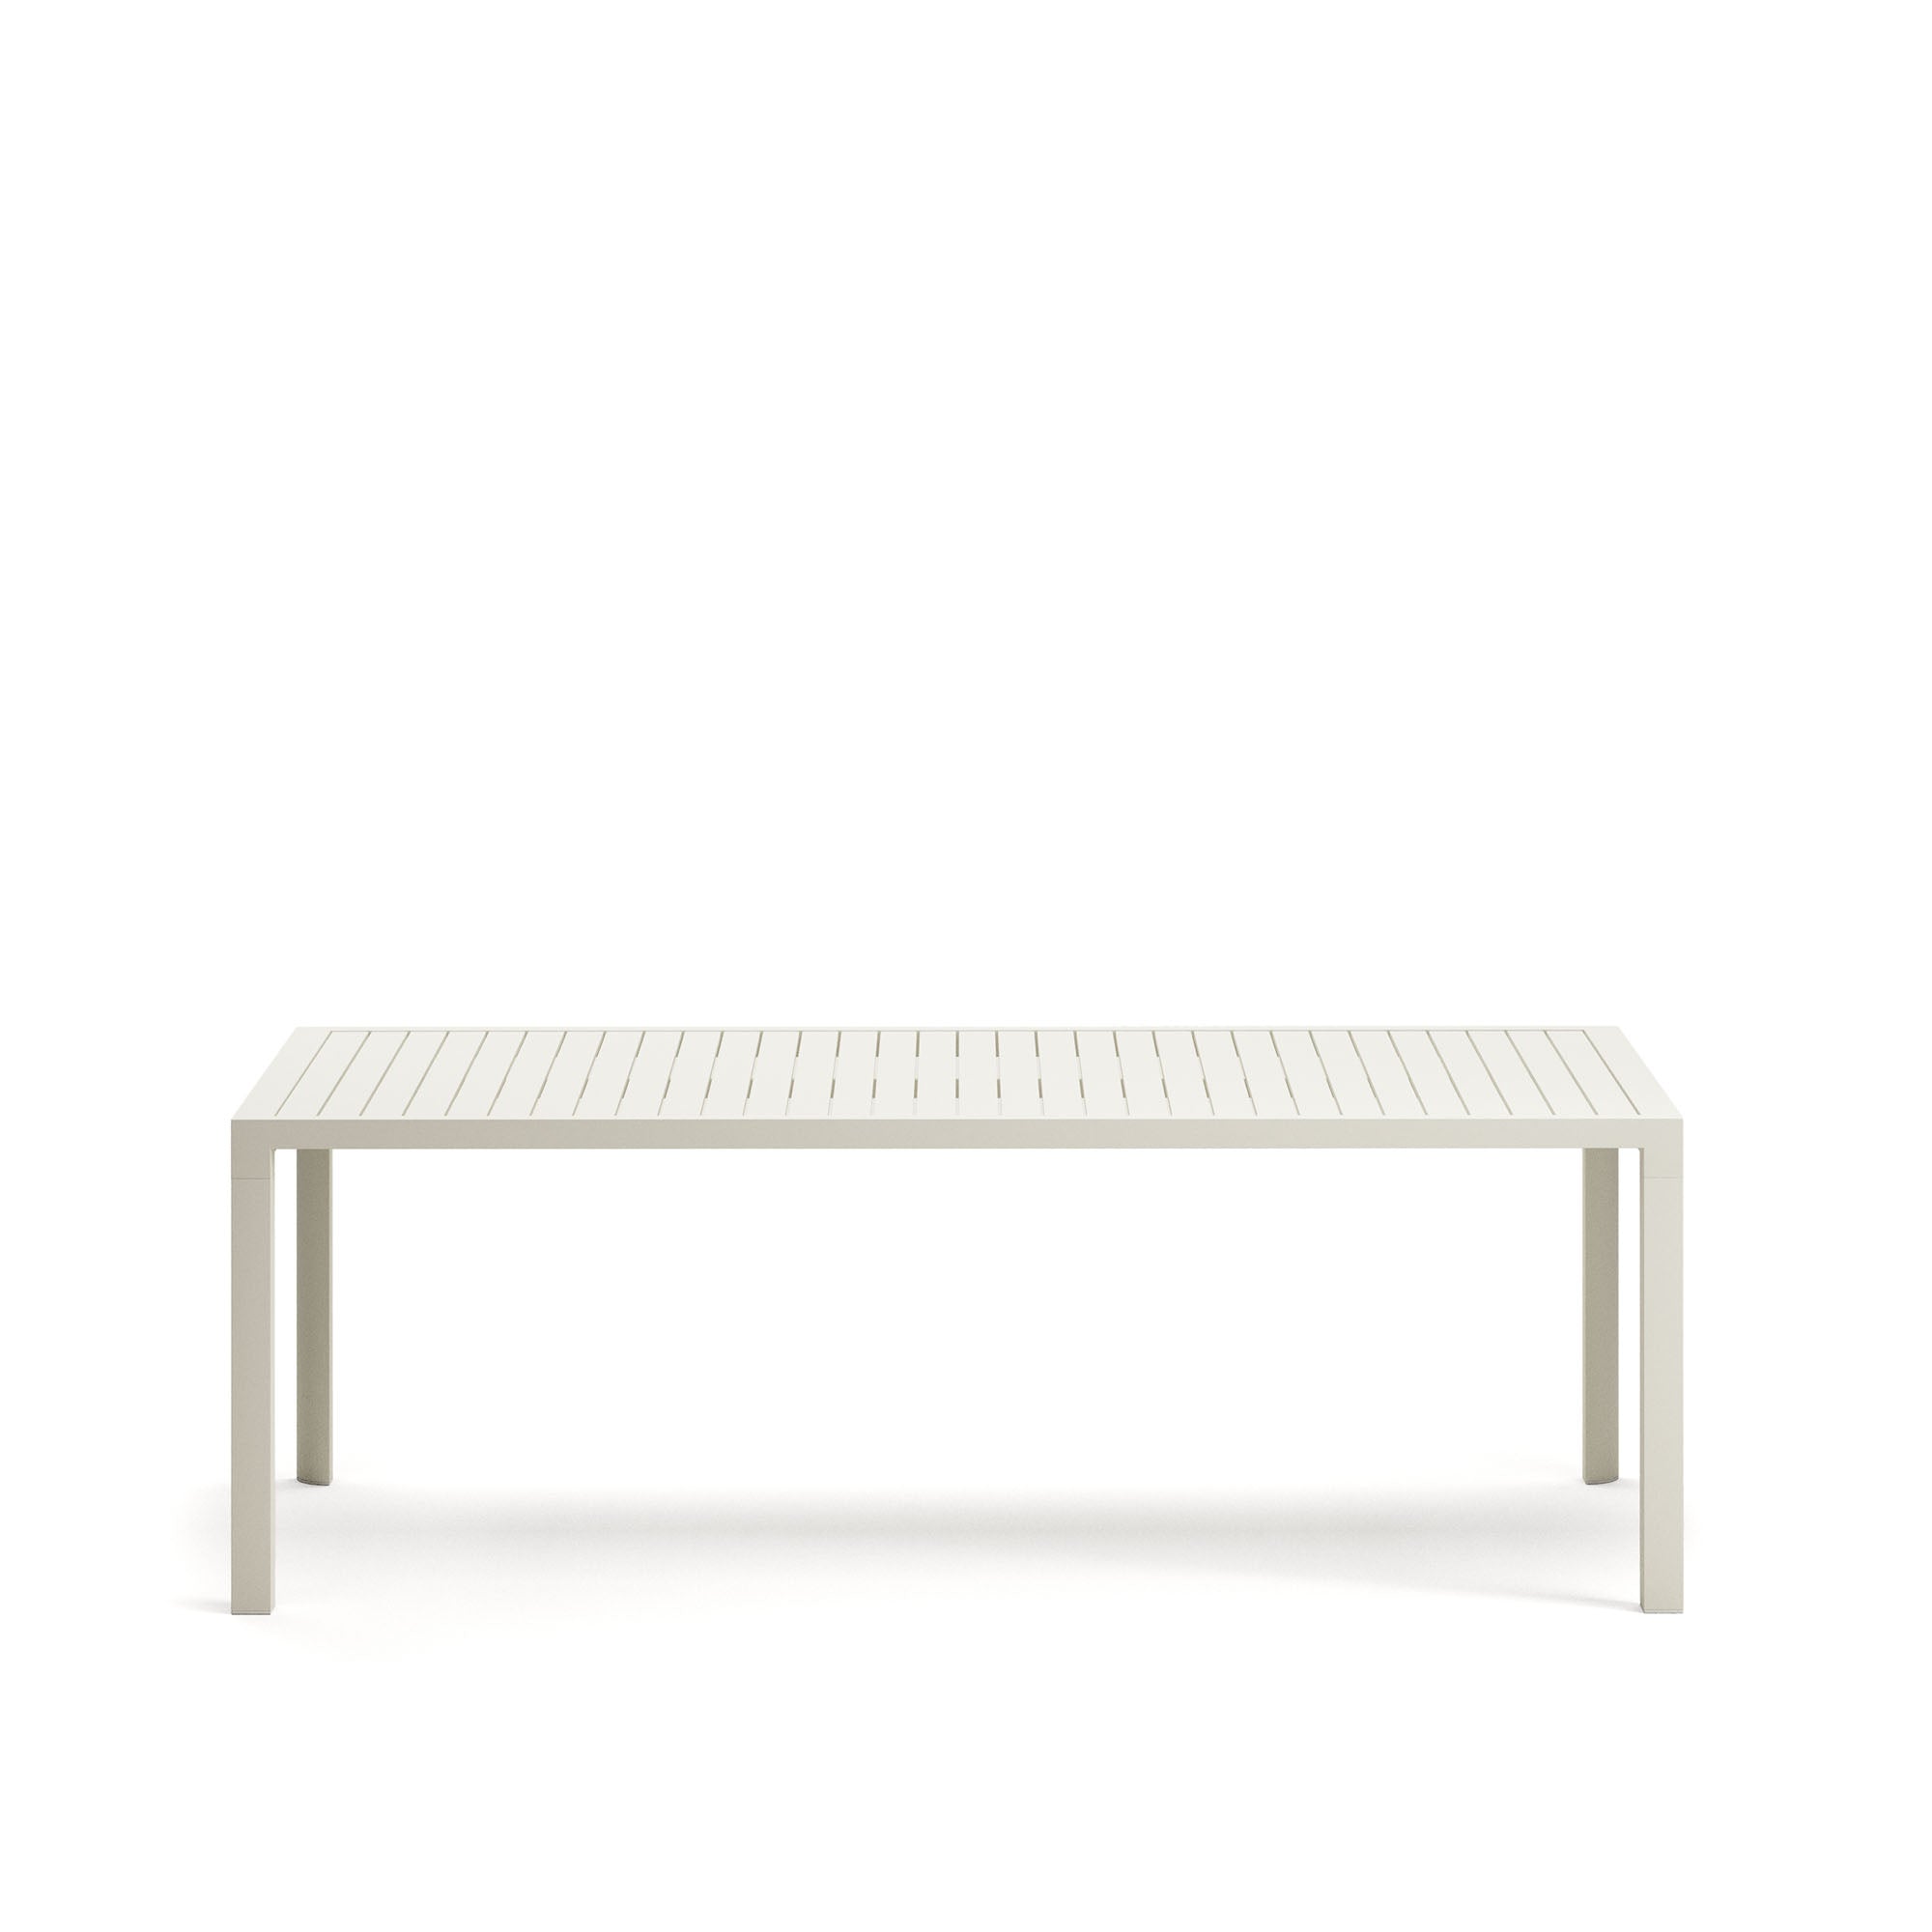 Culip alumínium kültéri asztal, porszórt fehér kivitelben, 220 x 100 cm